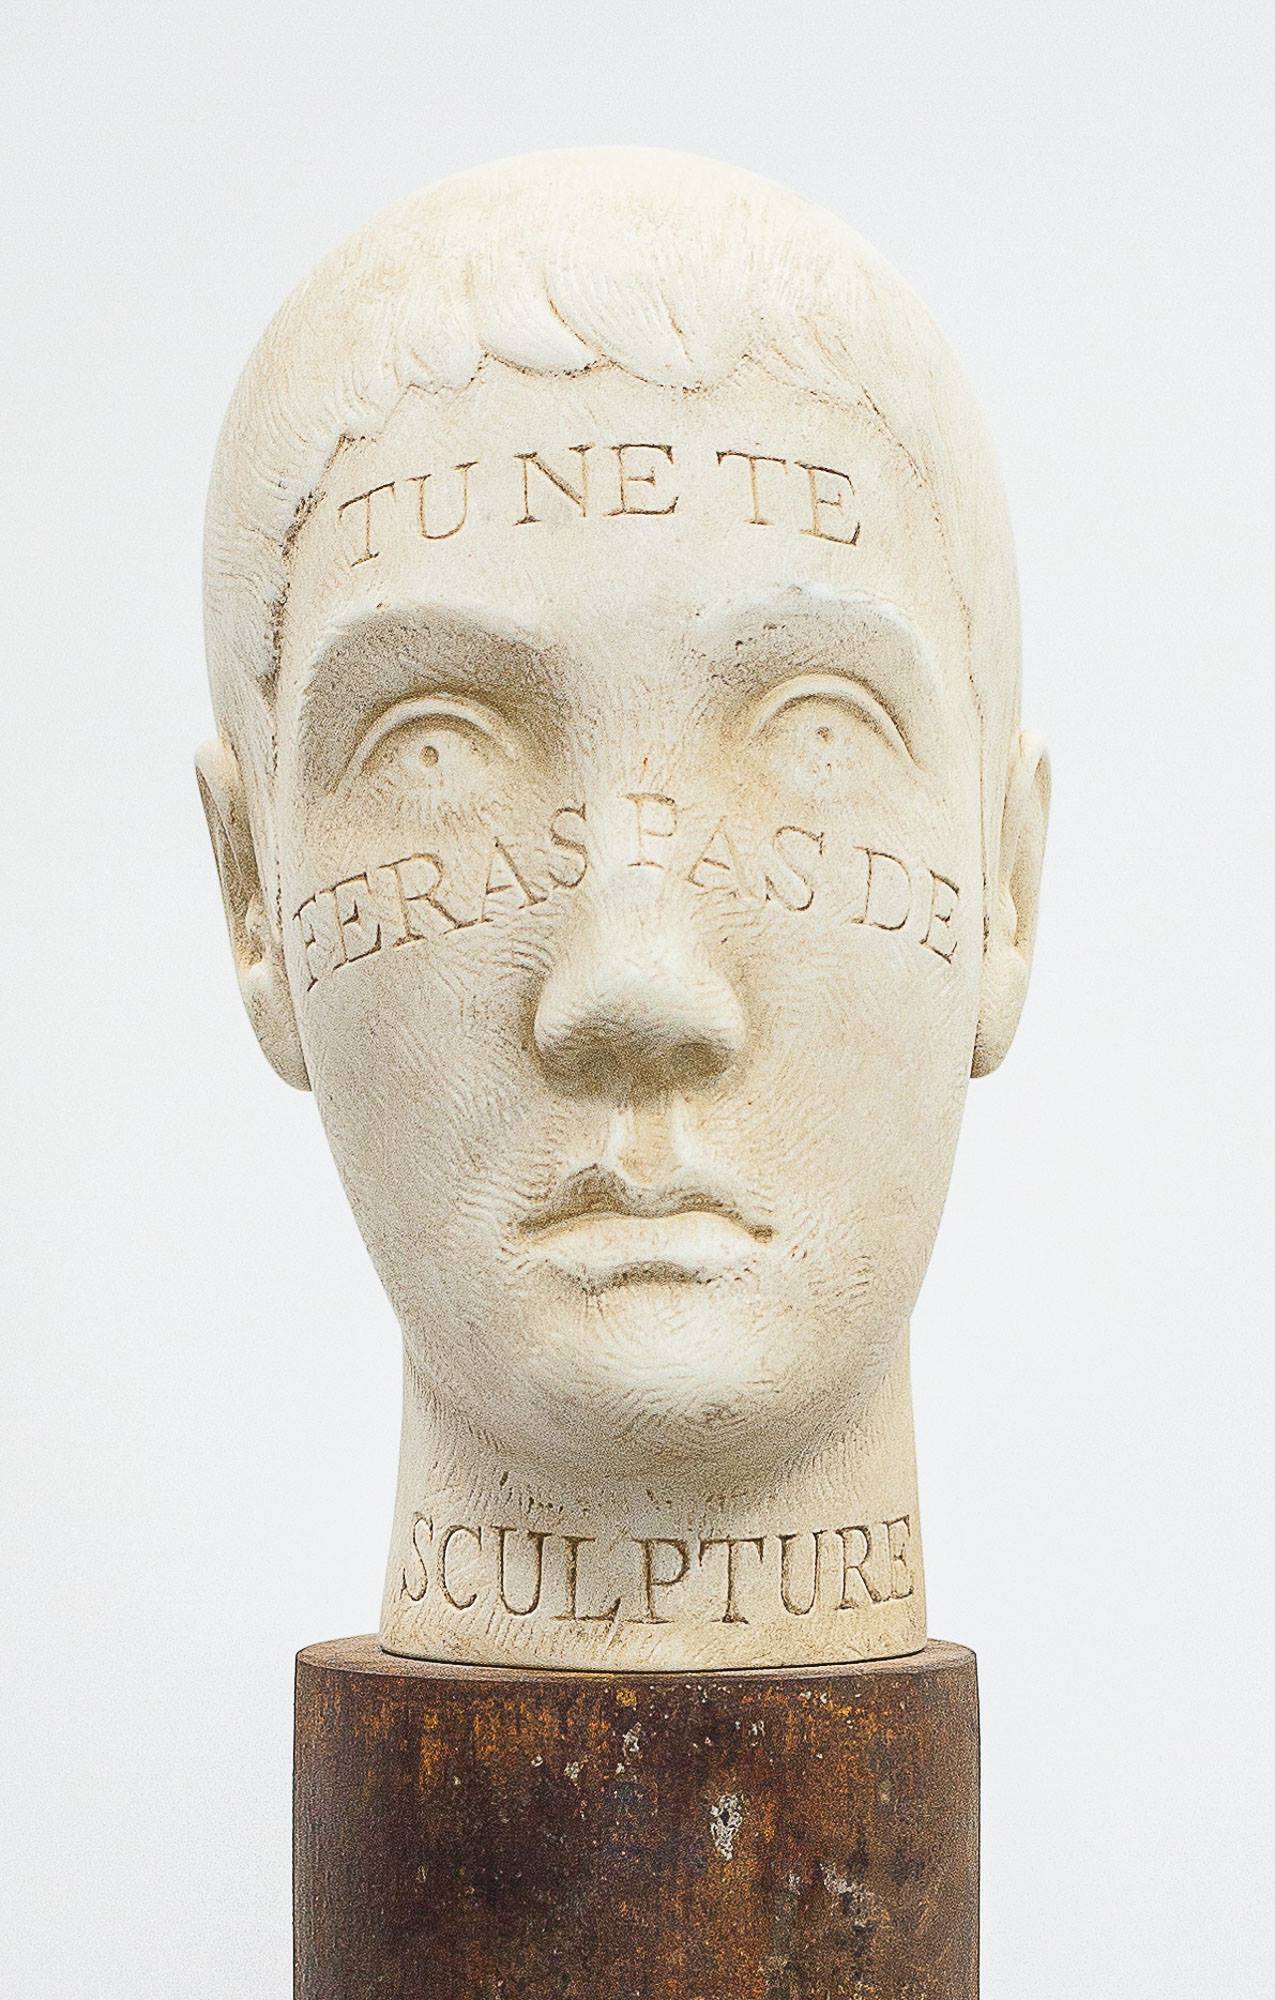 Dan ISTRATE, sculptor